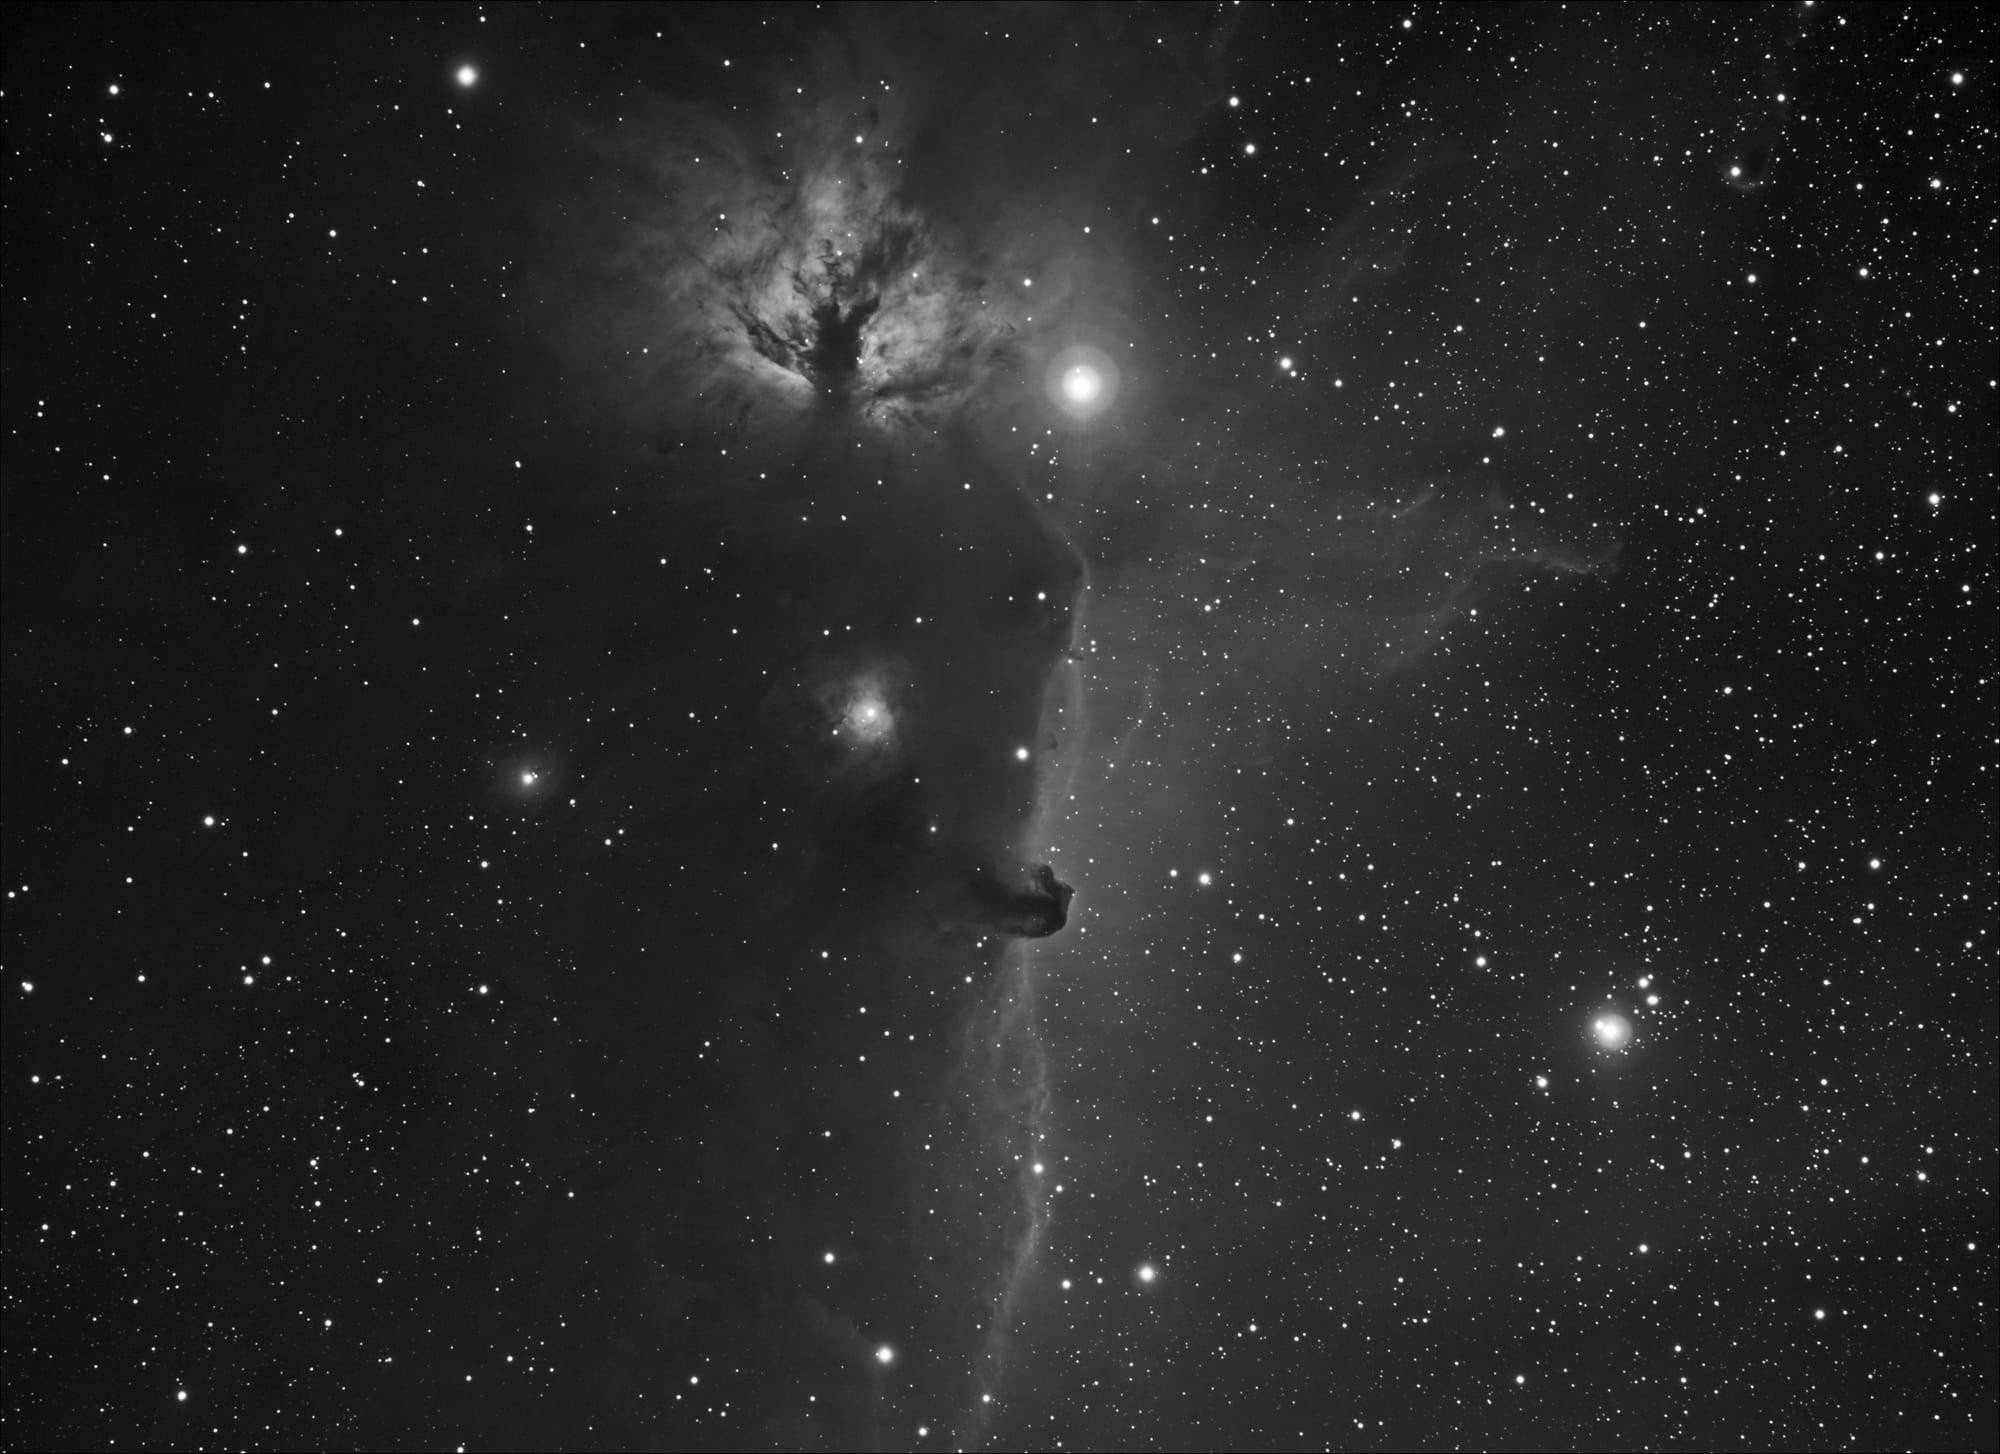 Horsehead Nebula (IC434, B33)